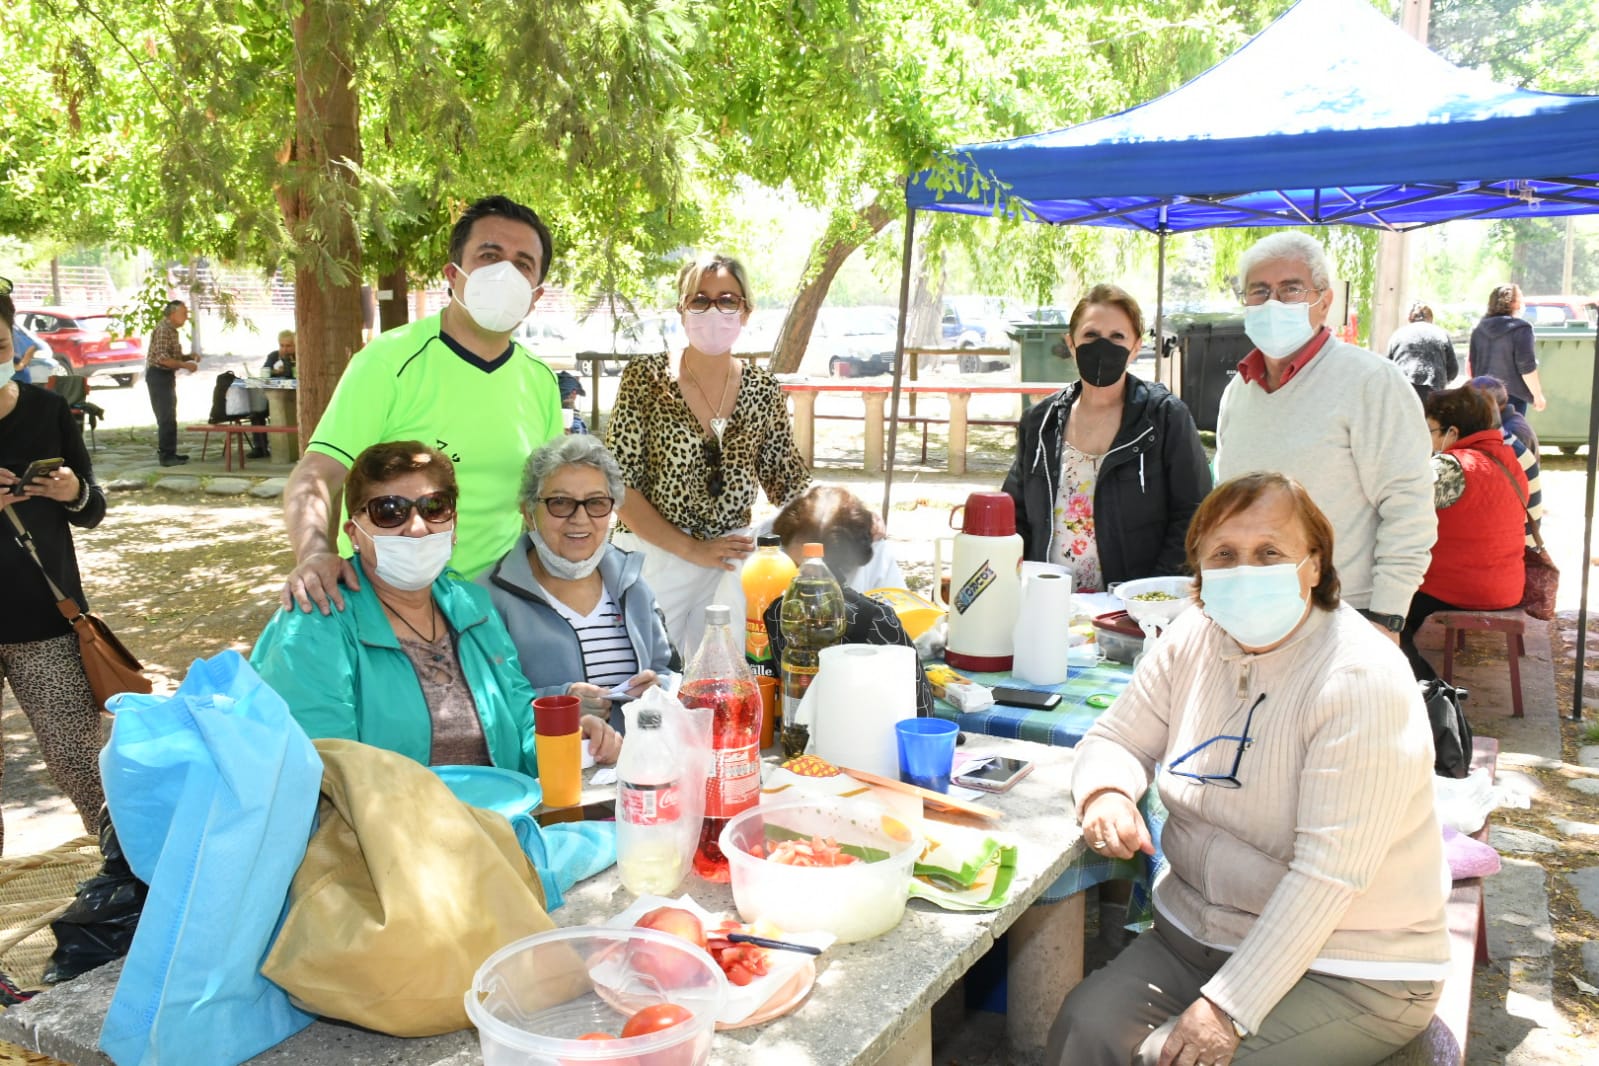 LOS ANDES: Más de 500 personas mayores disfrutaron del paseo al aire libre organizado por el Municipio Andino